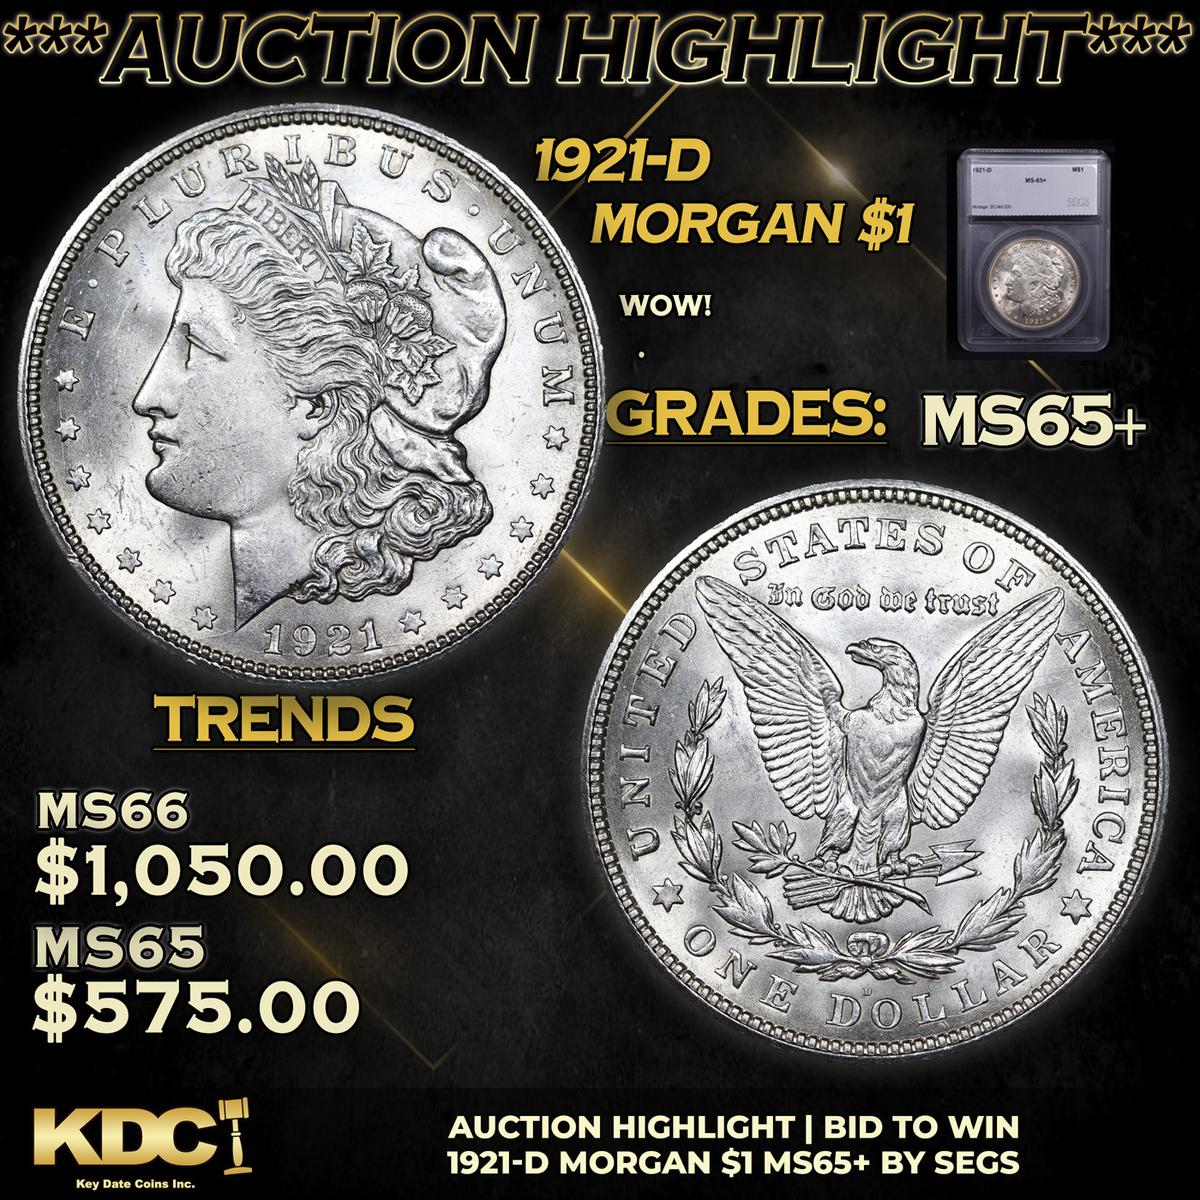 ***Auction Highlight*** 1921-d Morgan Dollar 1 Graded ms65+ By SEGS (fc)